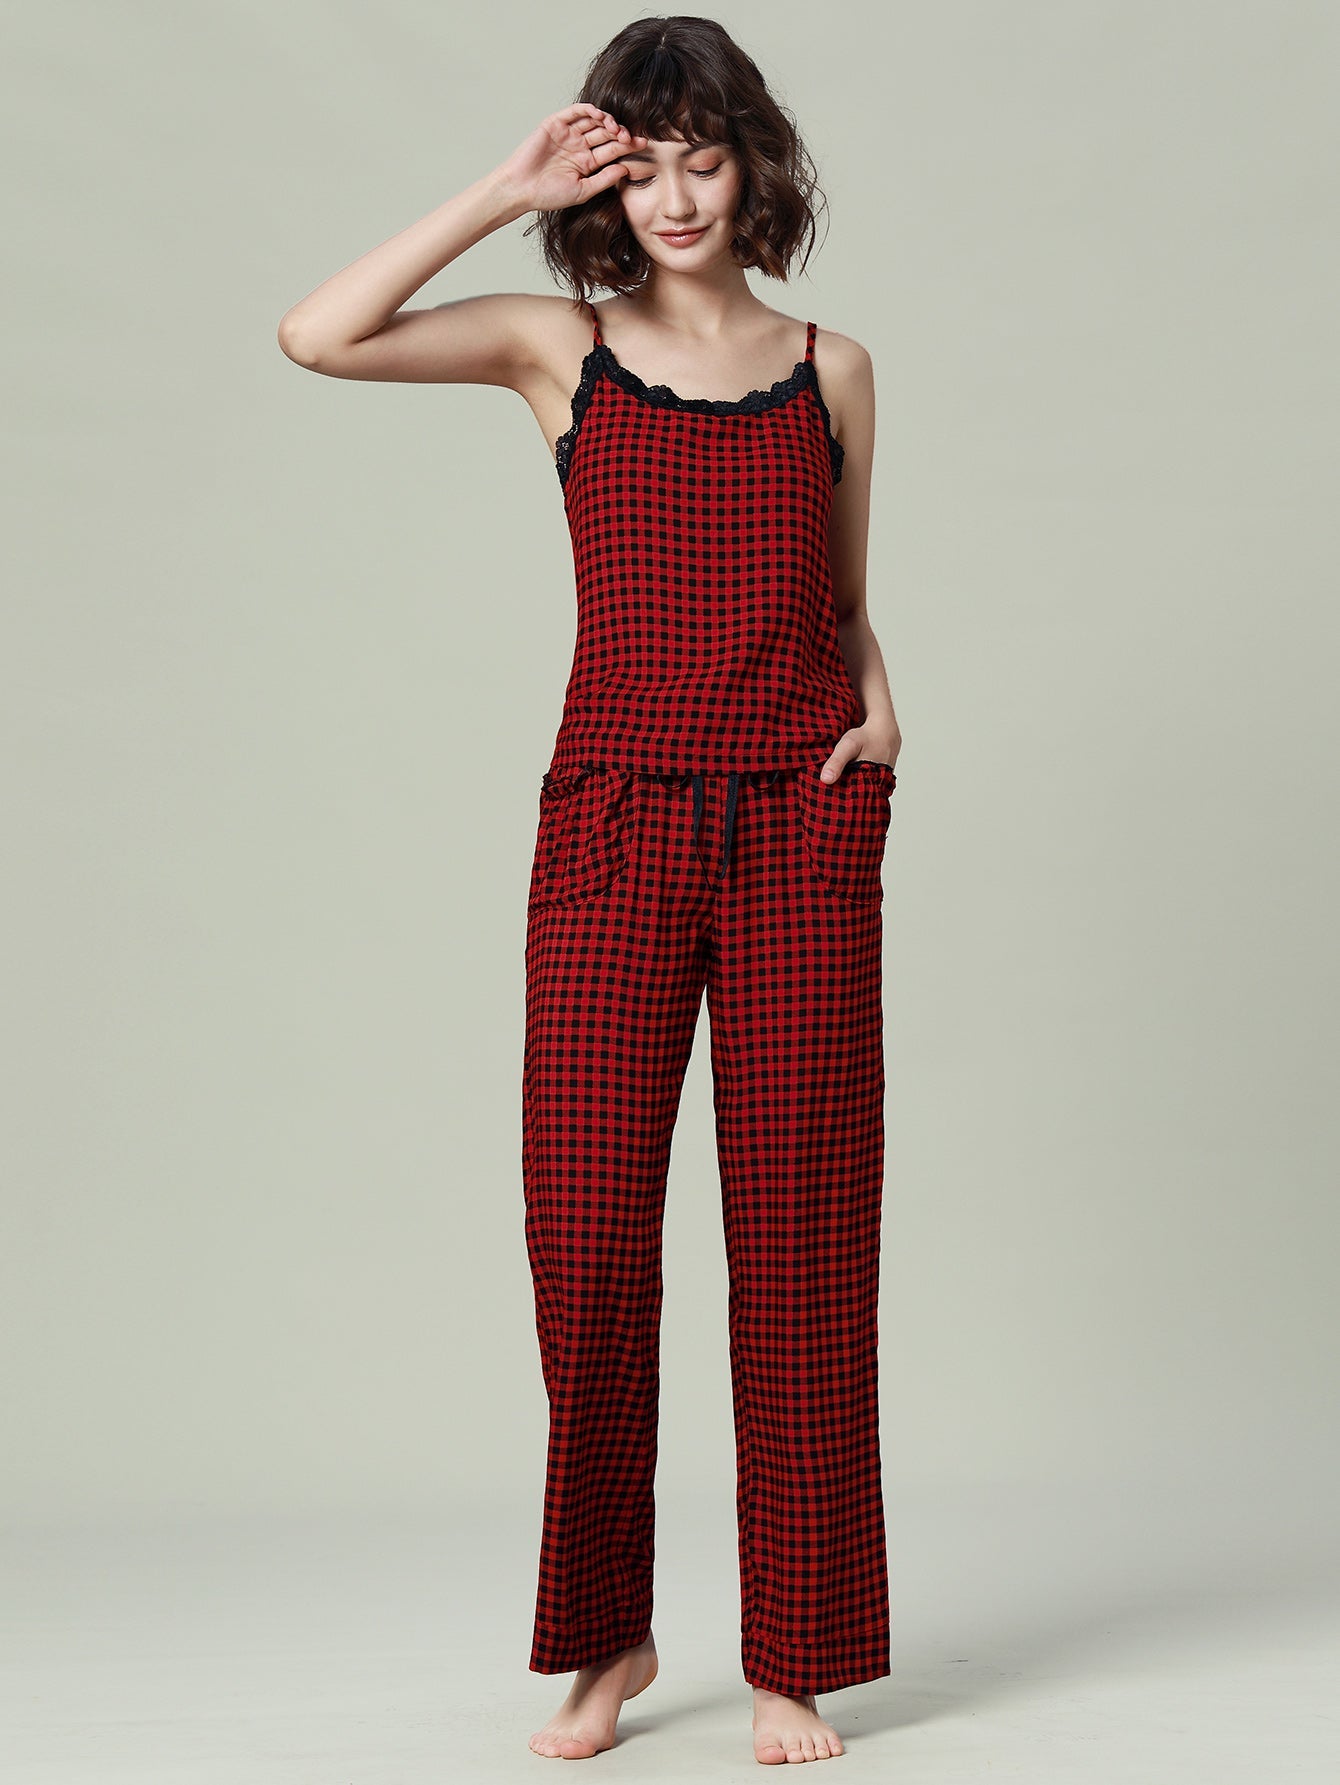 Womens Pajamas Set Cami Top and Capris Pants Sleepwear Pjs Set S-XL